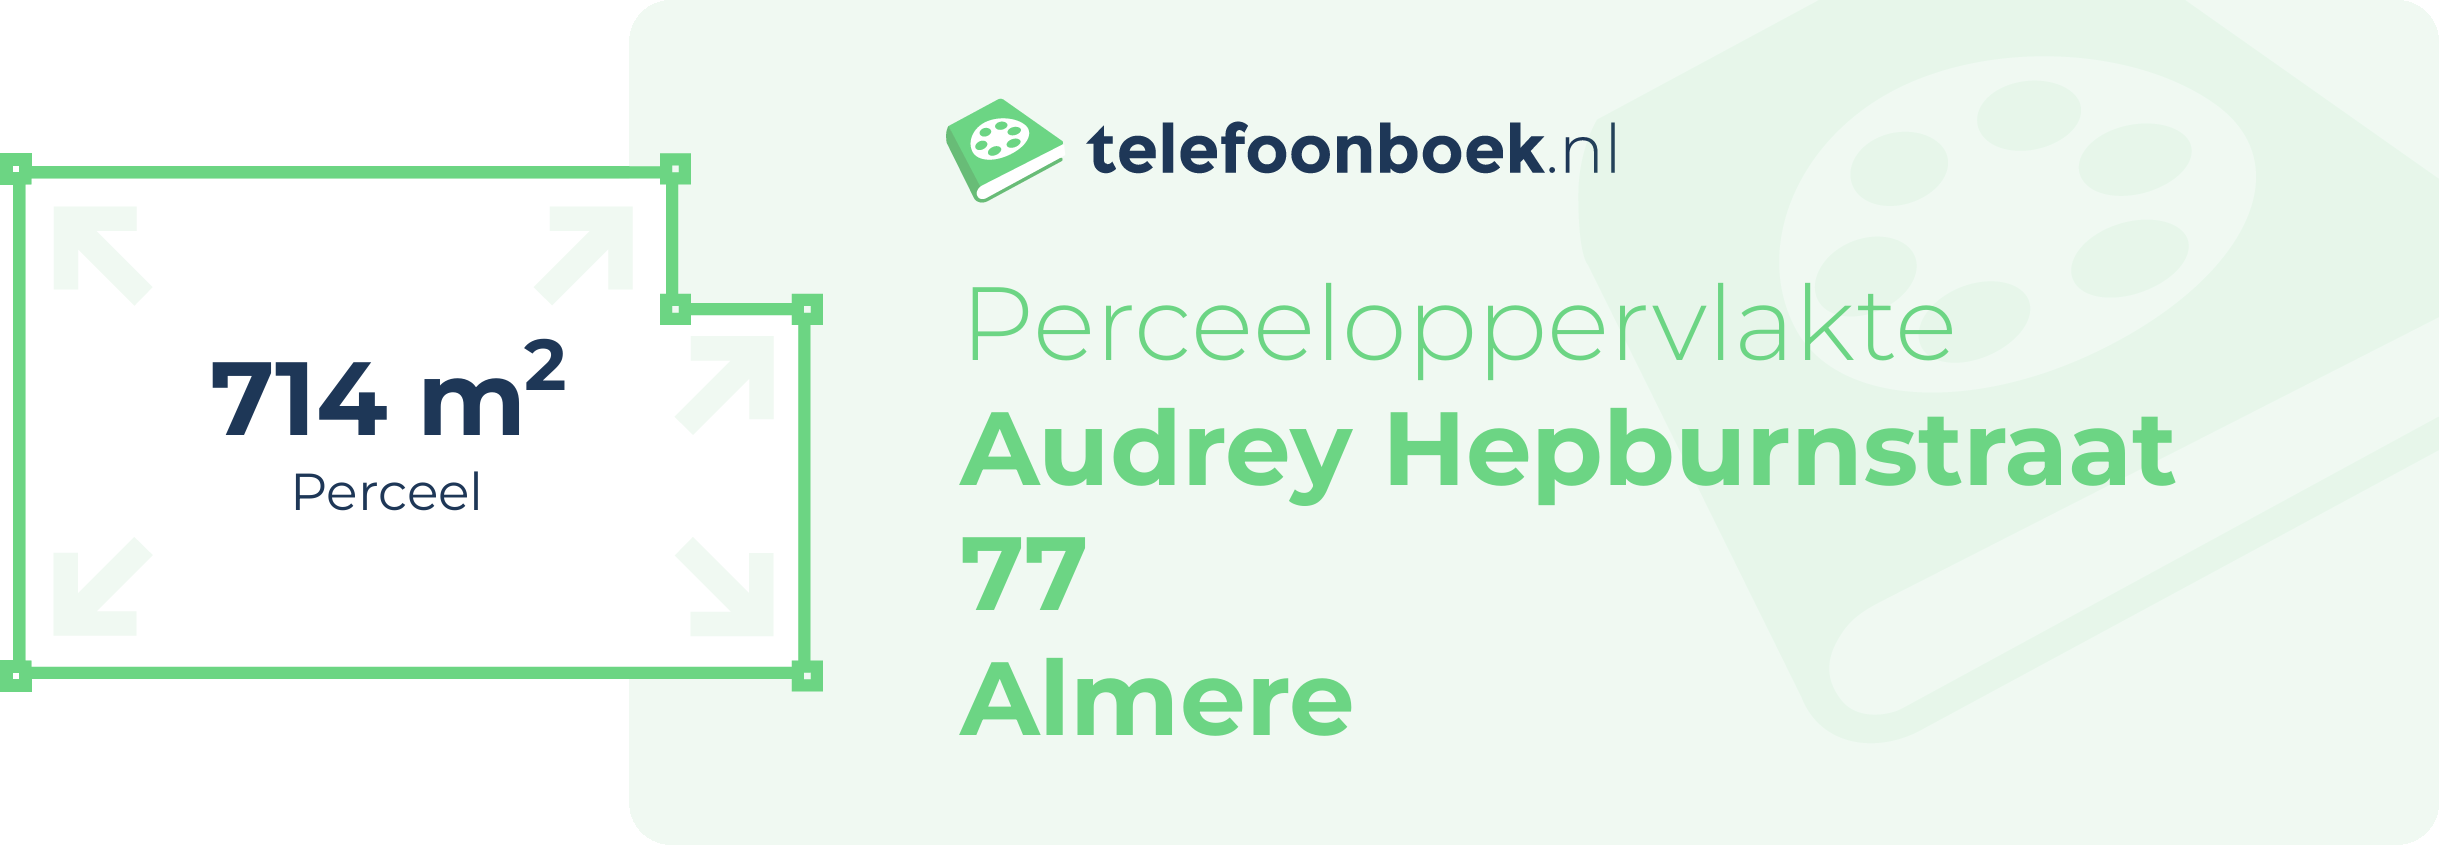 Perceeloppervlakte Audrey Hepburnstraat 77 Almere